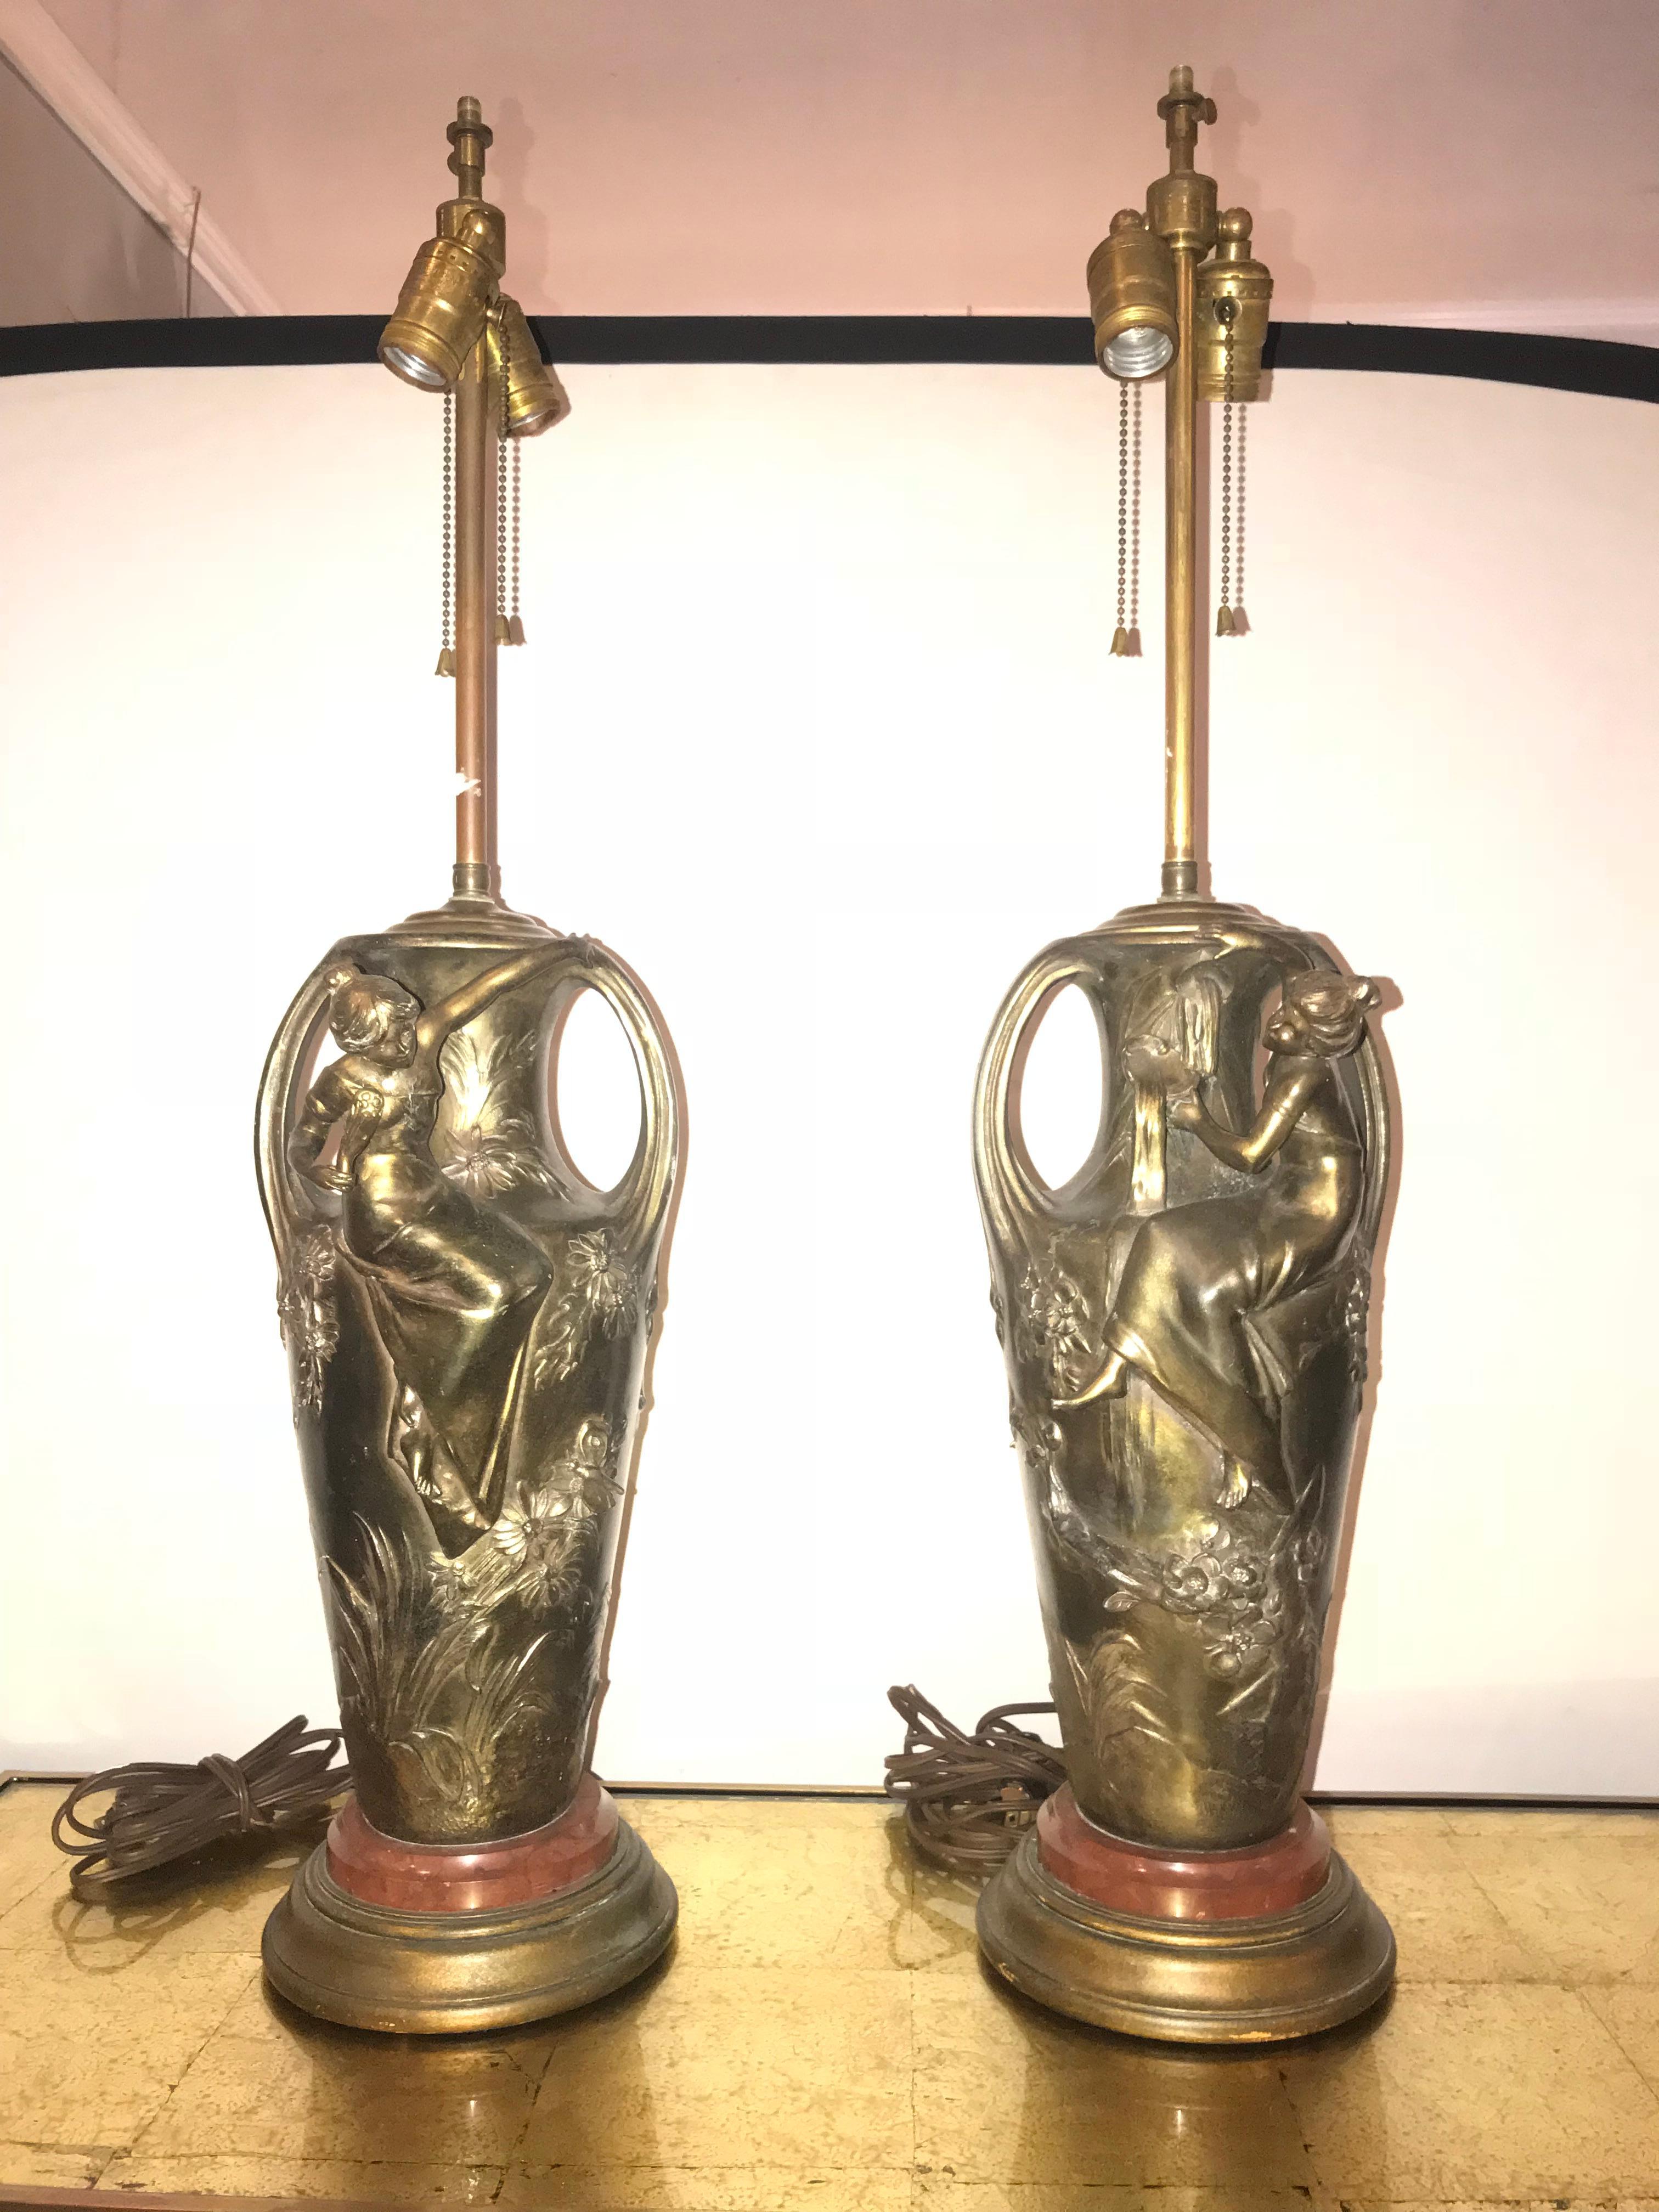 Paar figurale Jugendstil-Urnen als Lampen montiert. Diese wunderschön gegossenen Urnen werden als Tischlampen montiert. Jedes zeigt ein junges Mädchen, das auf eine große Urne klettert, die mit Blumen, Ranken und ähnlichem in einem wunderschönen